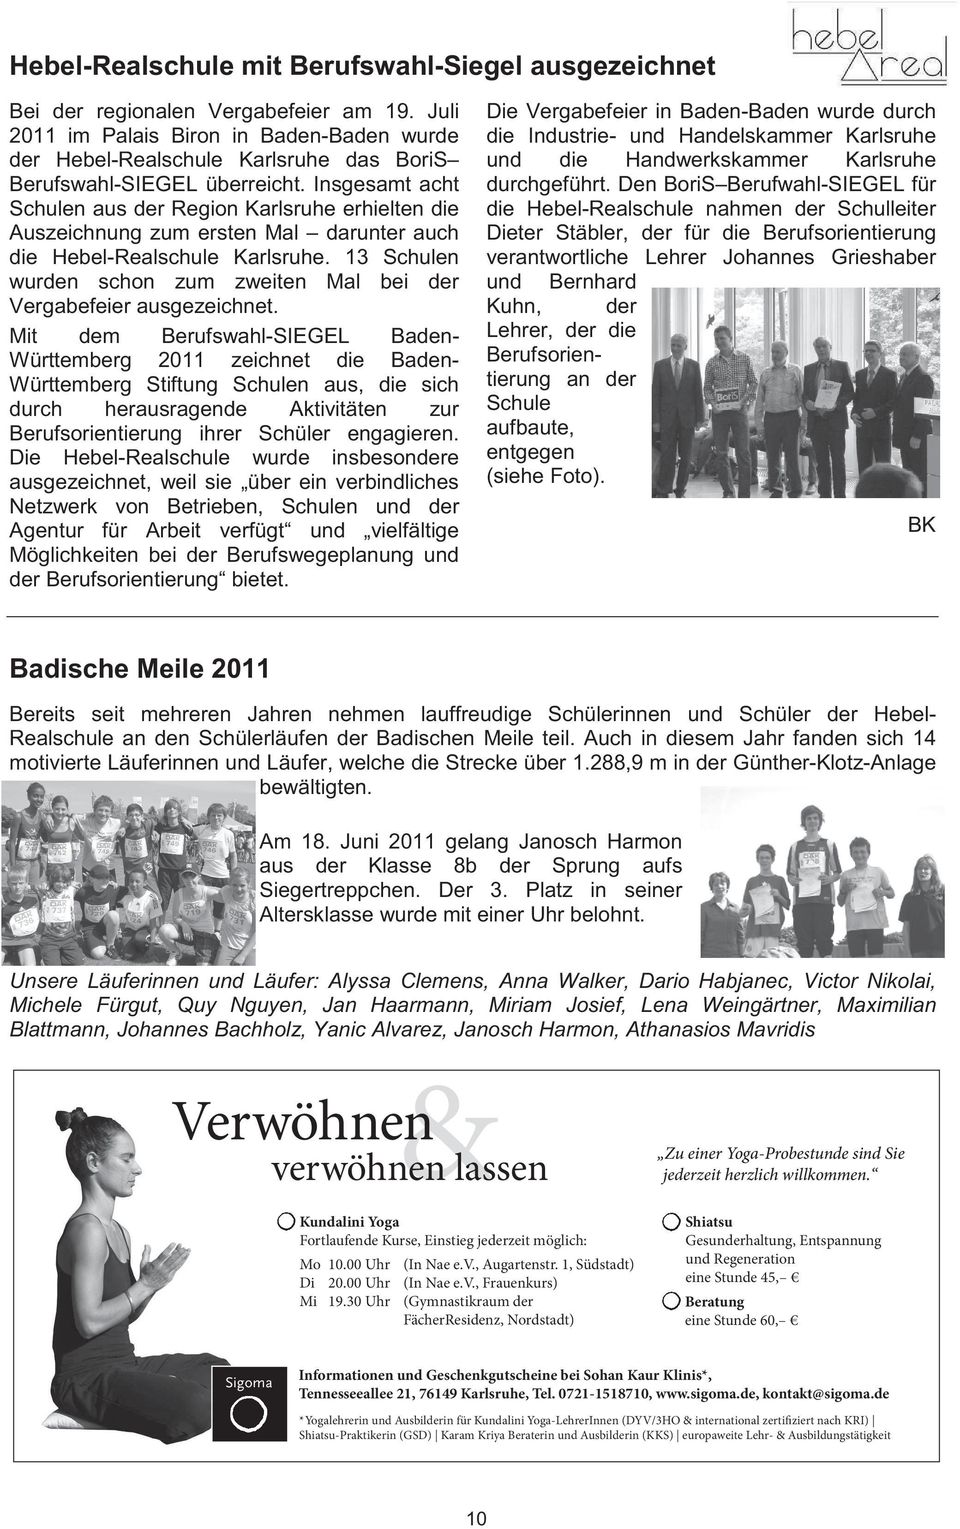 Insgesamt acht Schulen aus der Region Karlsruhe erhielten die Auszeichnung zum ersten Mal darunter auch die Hebel-Realschule Karlsruhe.